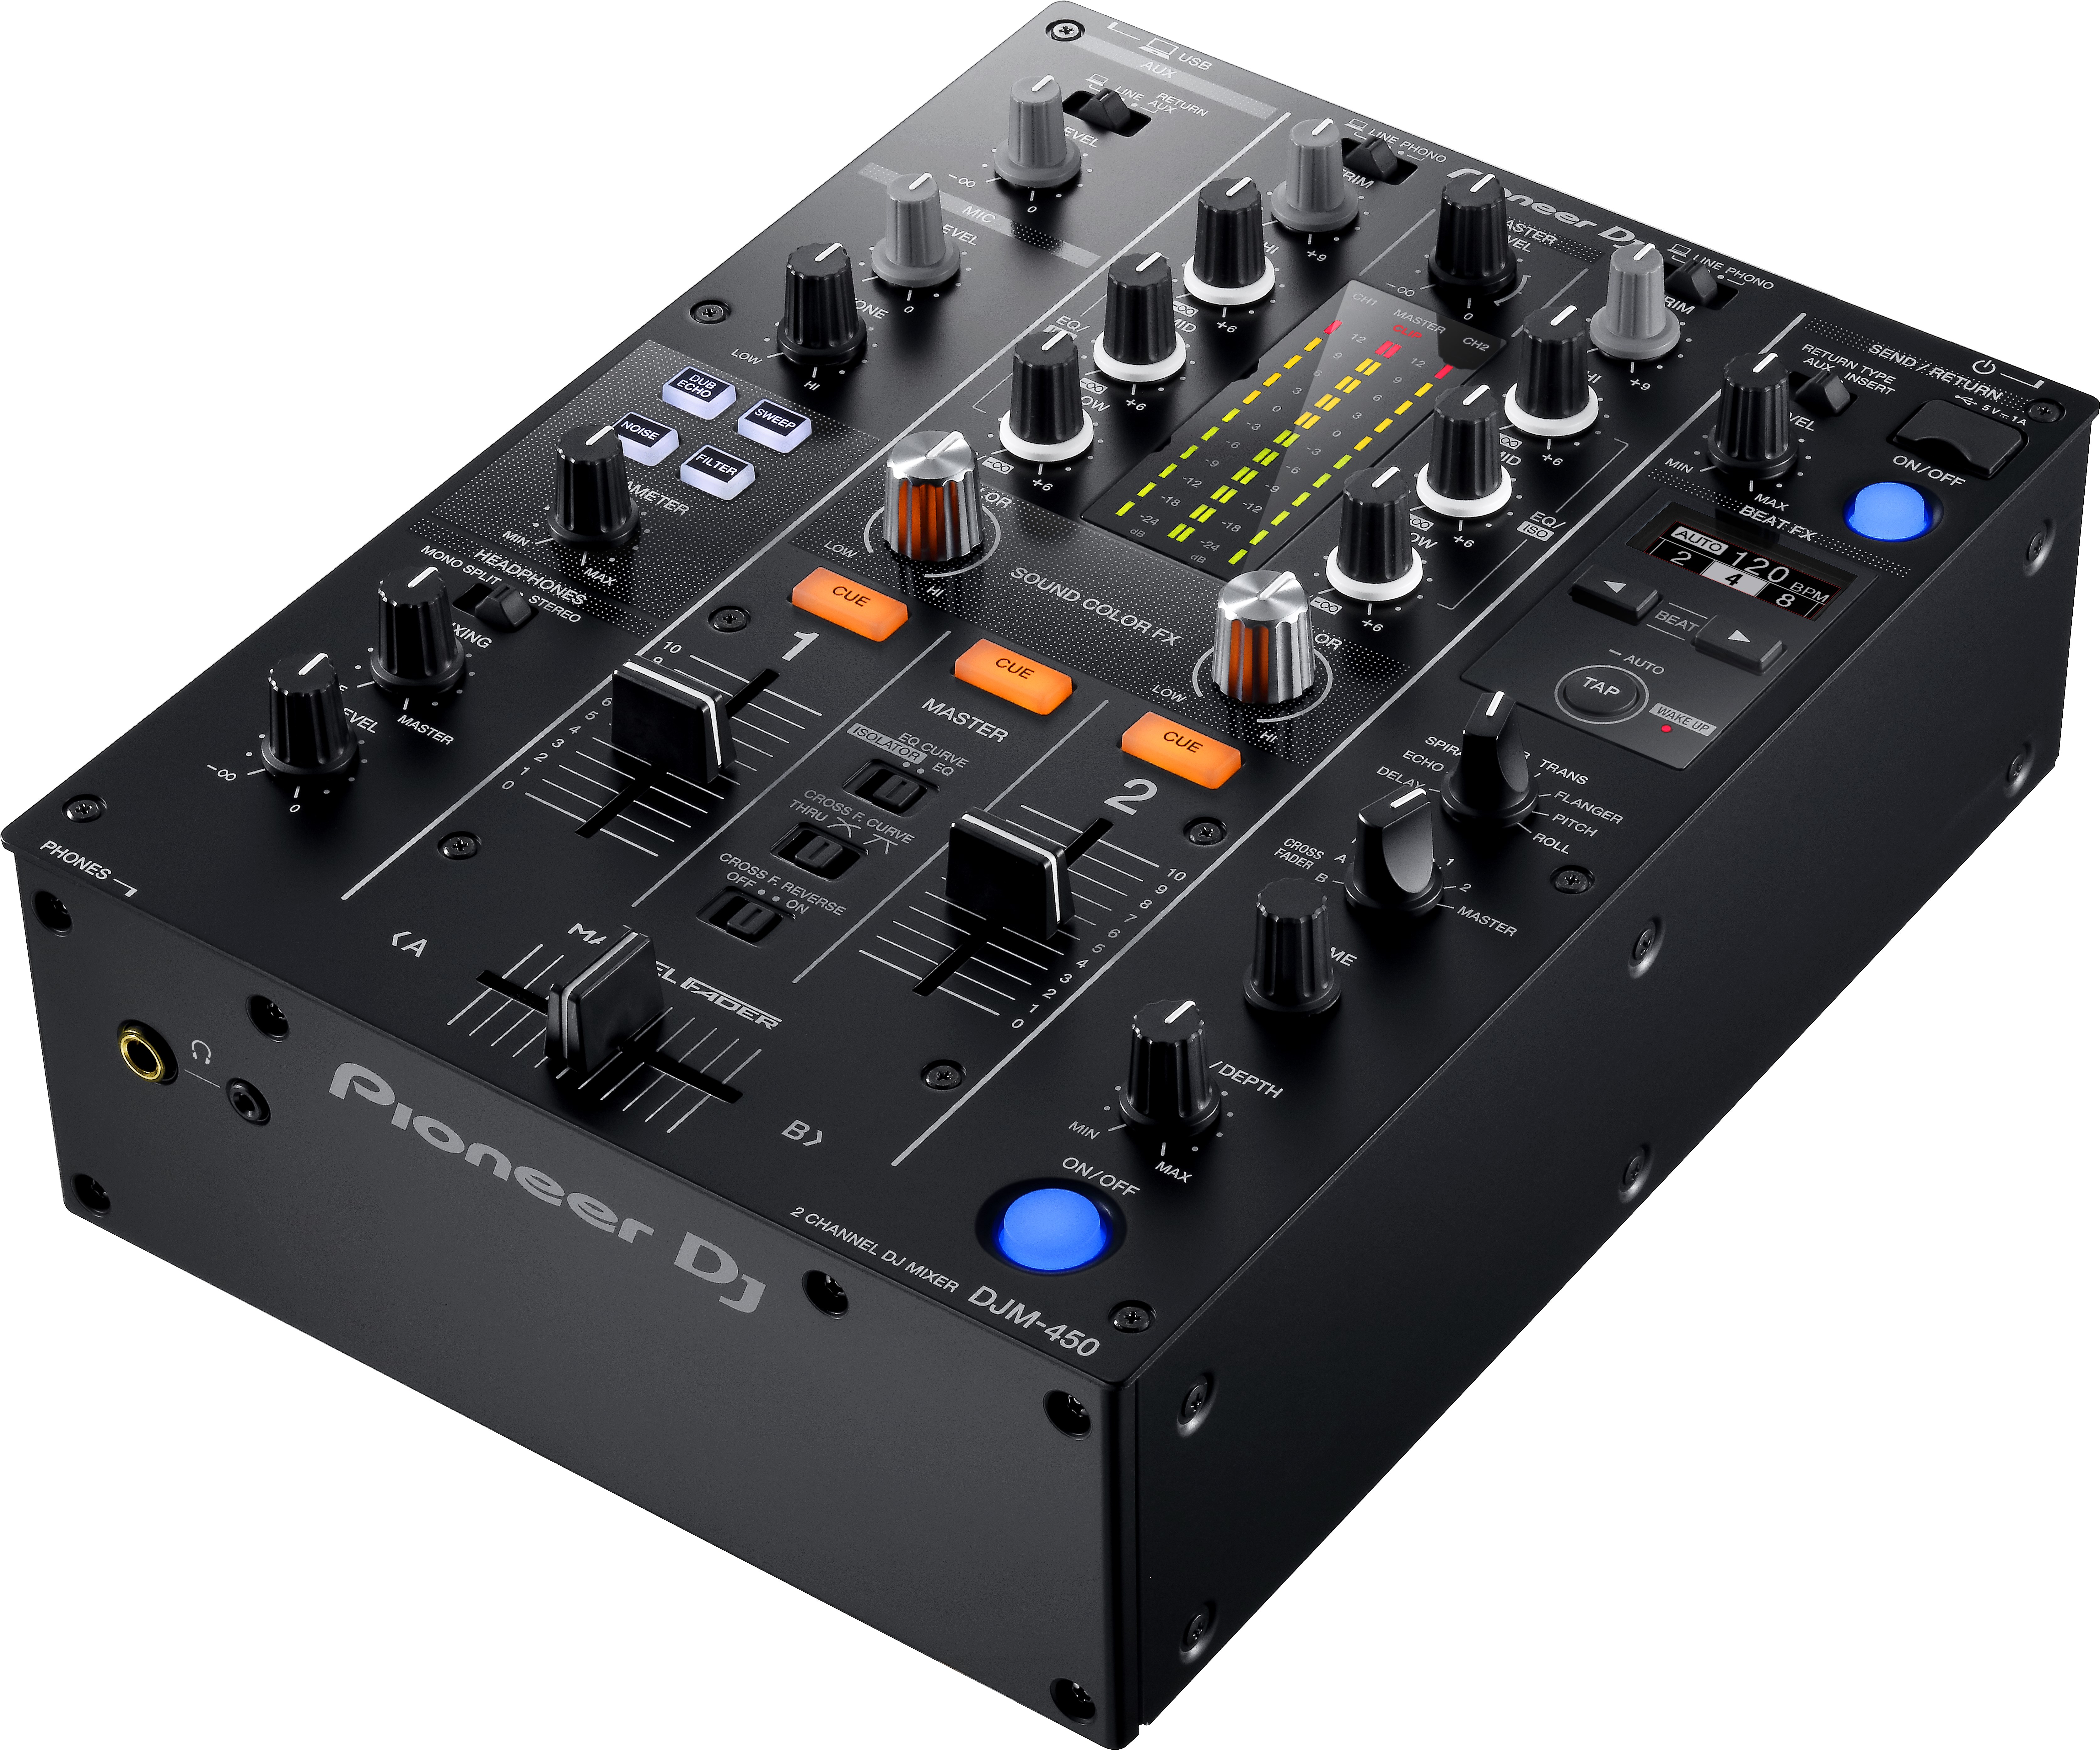 DJM-450: Pioneer DJ's Stout Mixer